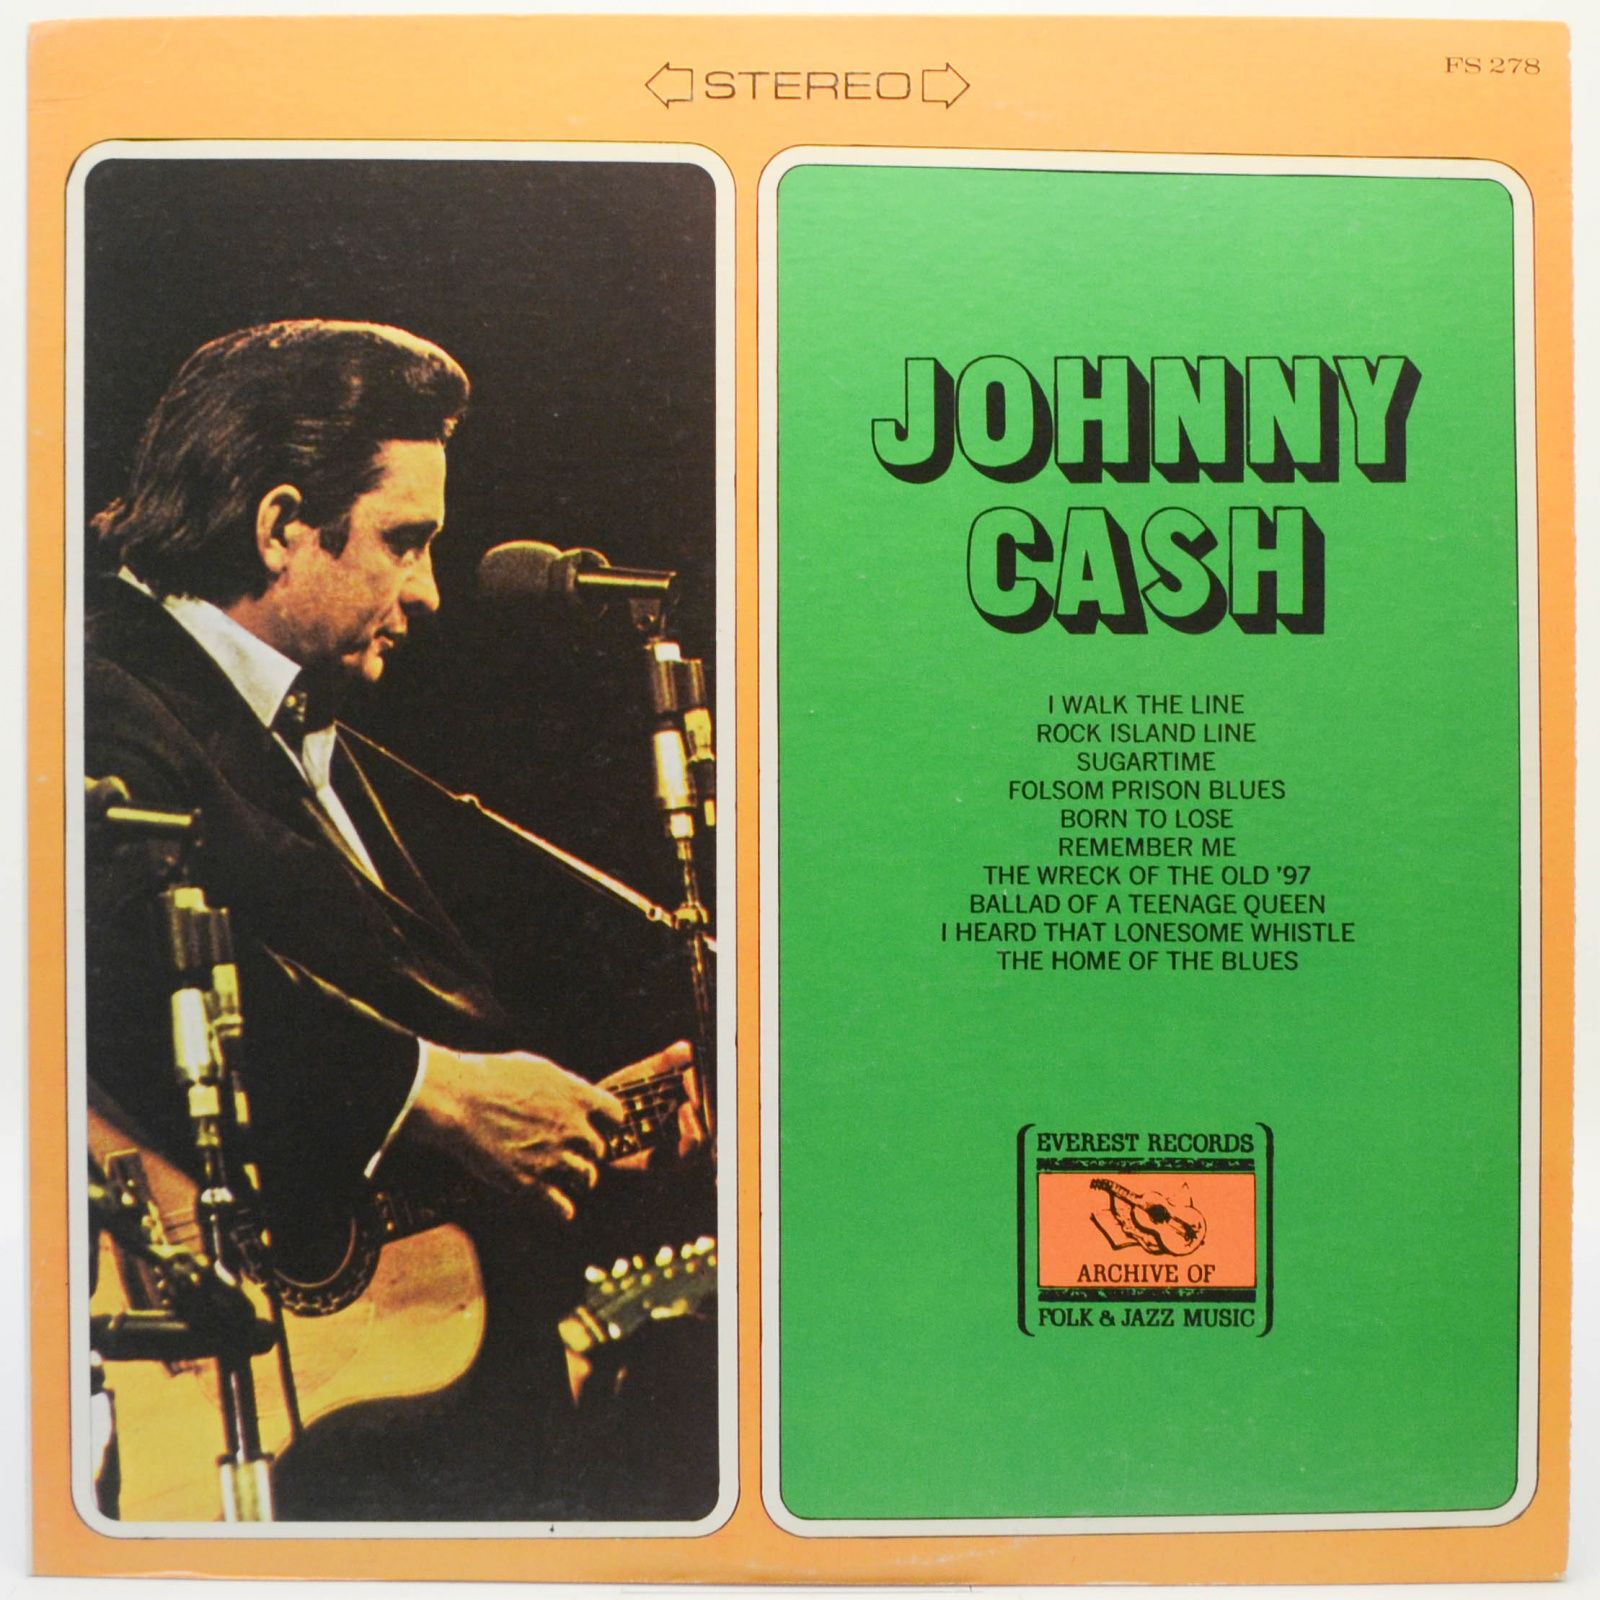 Johnny Cash (USA), 1973